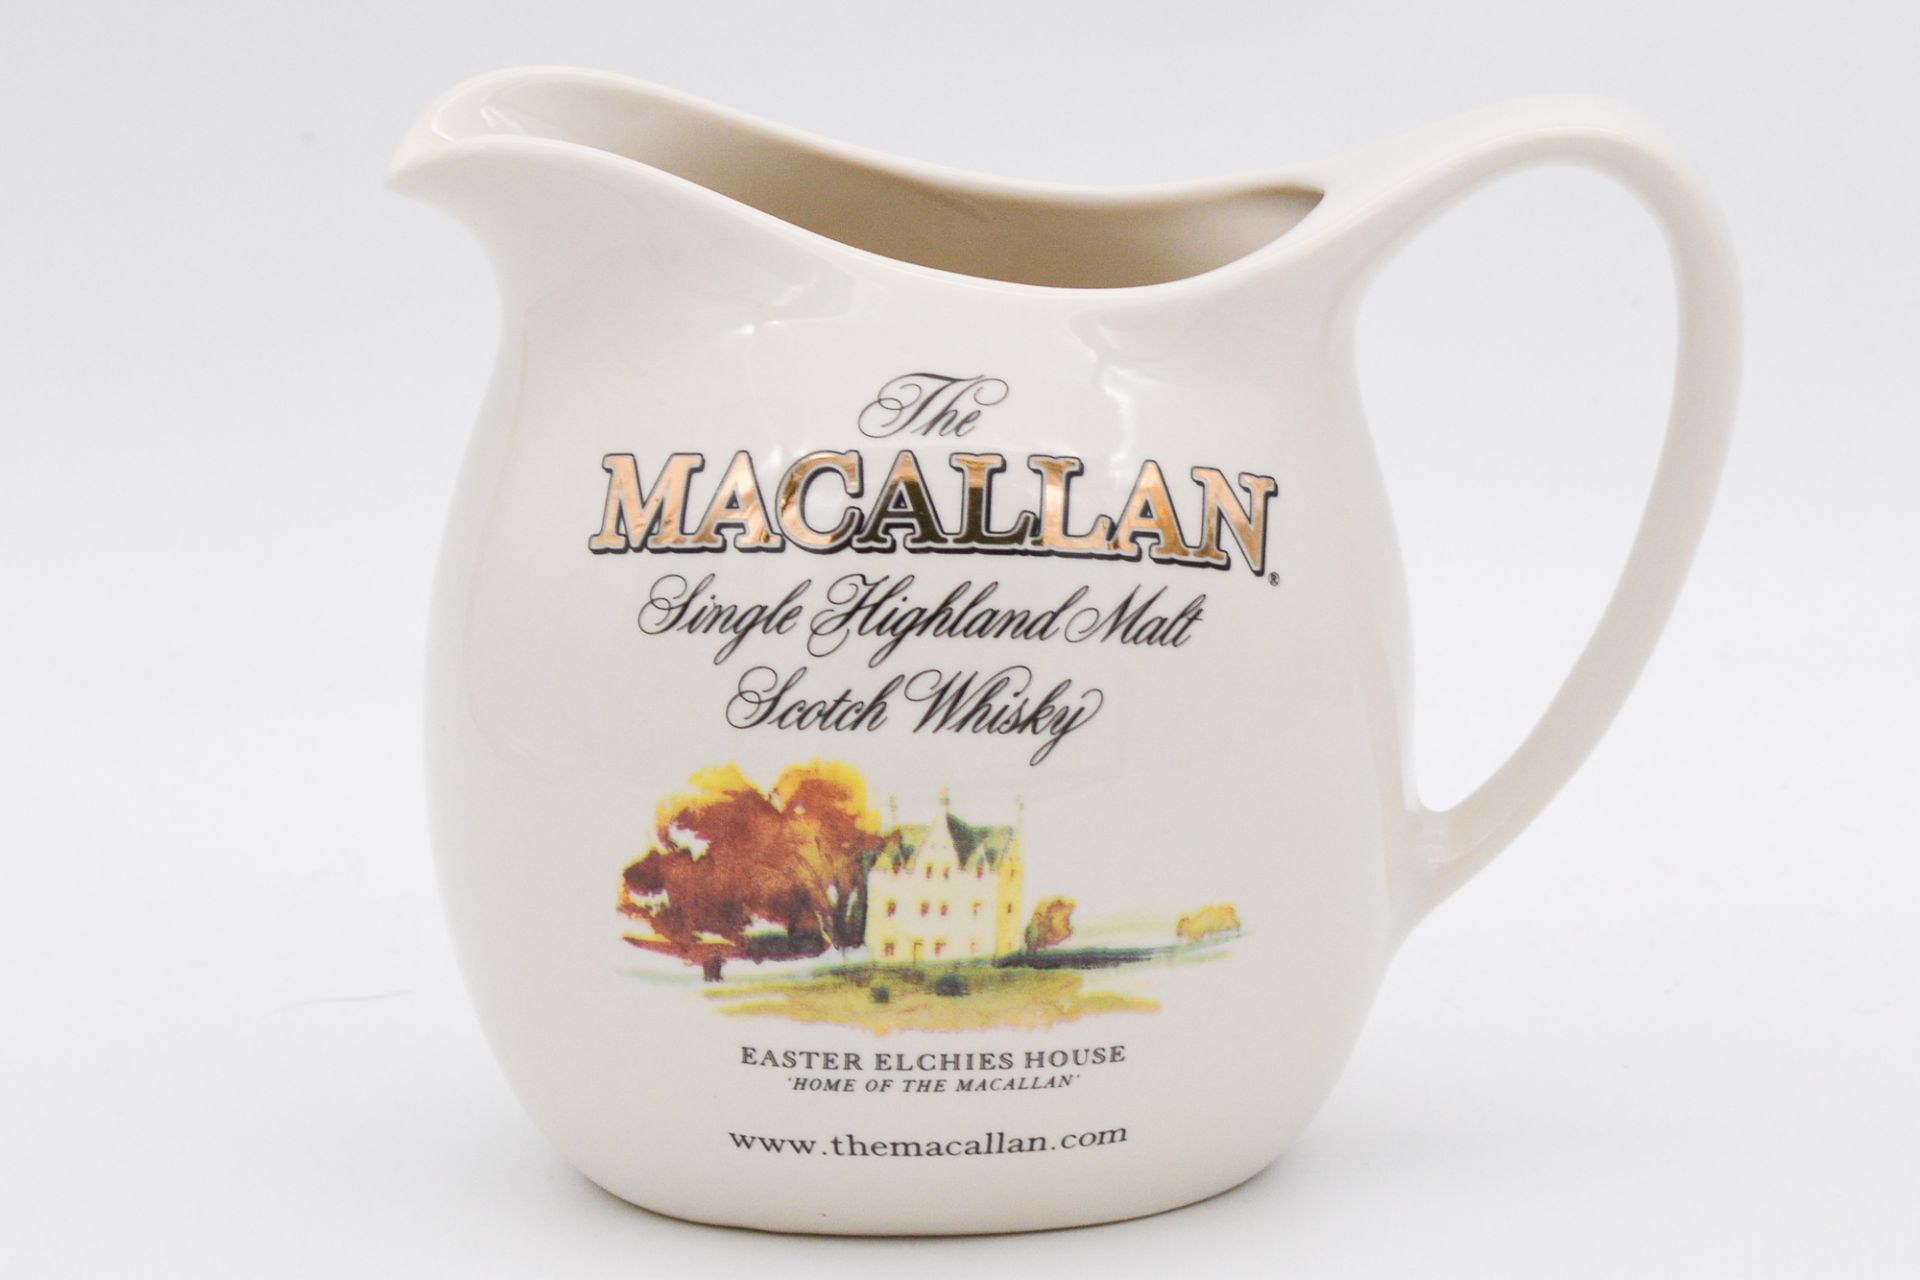 Macallan - a large ceramic water jug